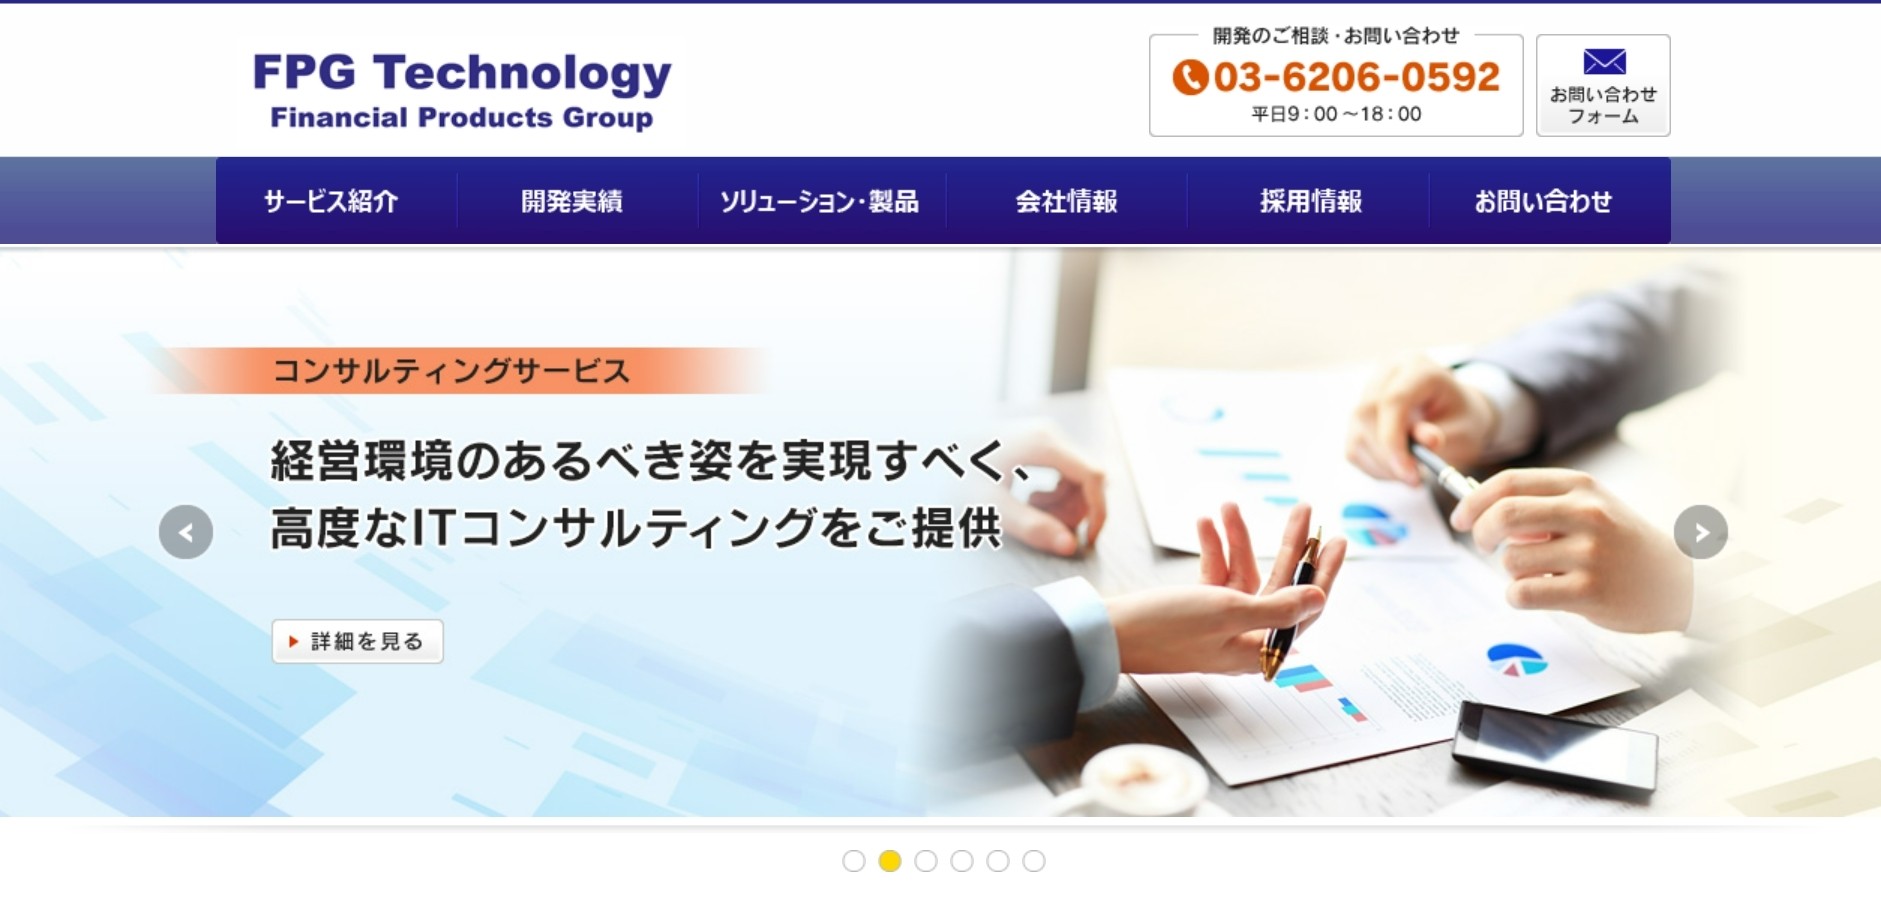 株式会社ＦＰＧテクノロジーの株式会社カタクラ・クロステクノロジー:データセンターサービス